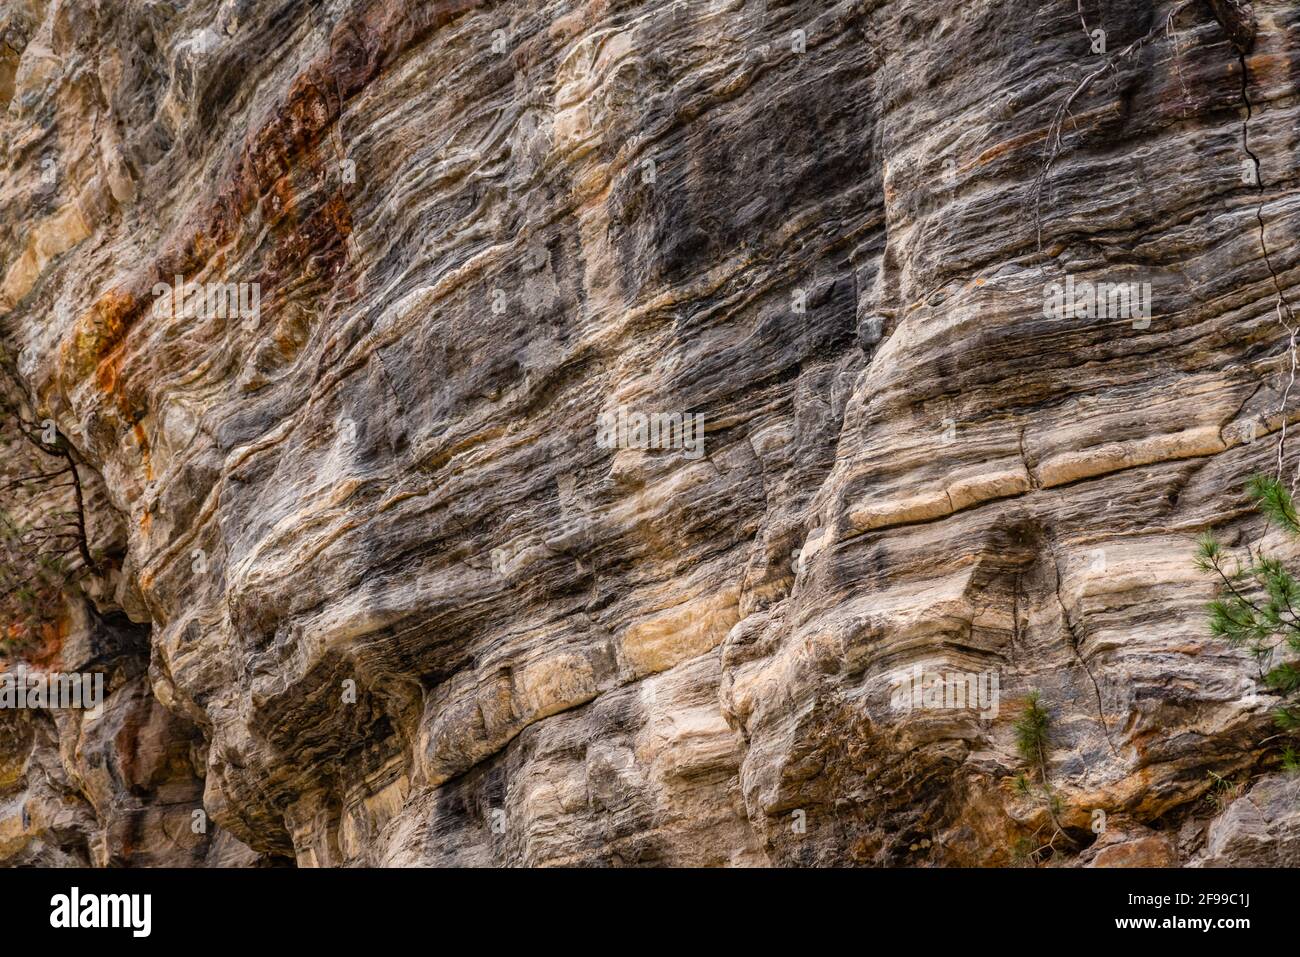 Estrato de roca caliza, es una roca sedimentaria se forma cuando las capas de fragmentos esqueléticos de organismos marinos se acumulan por sedimentación luego uplif Foto de stock